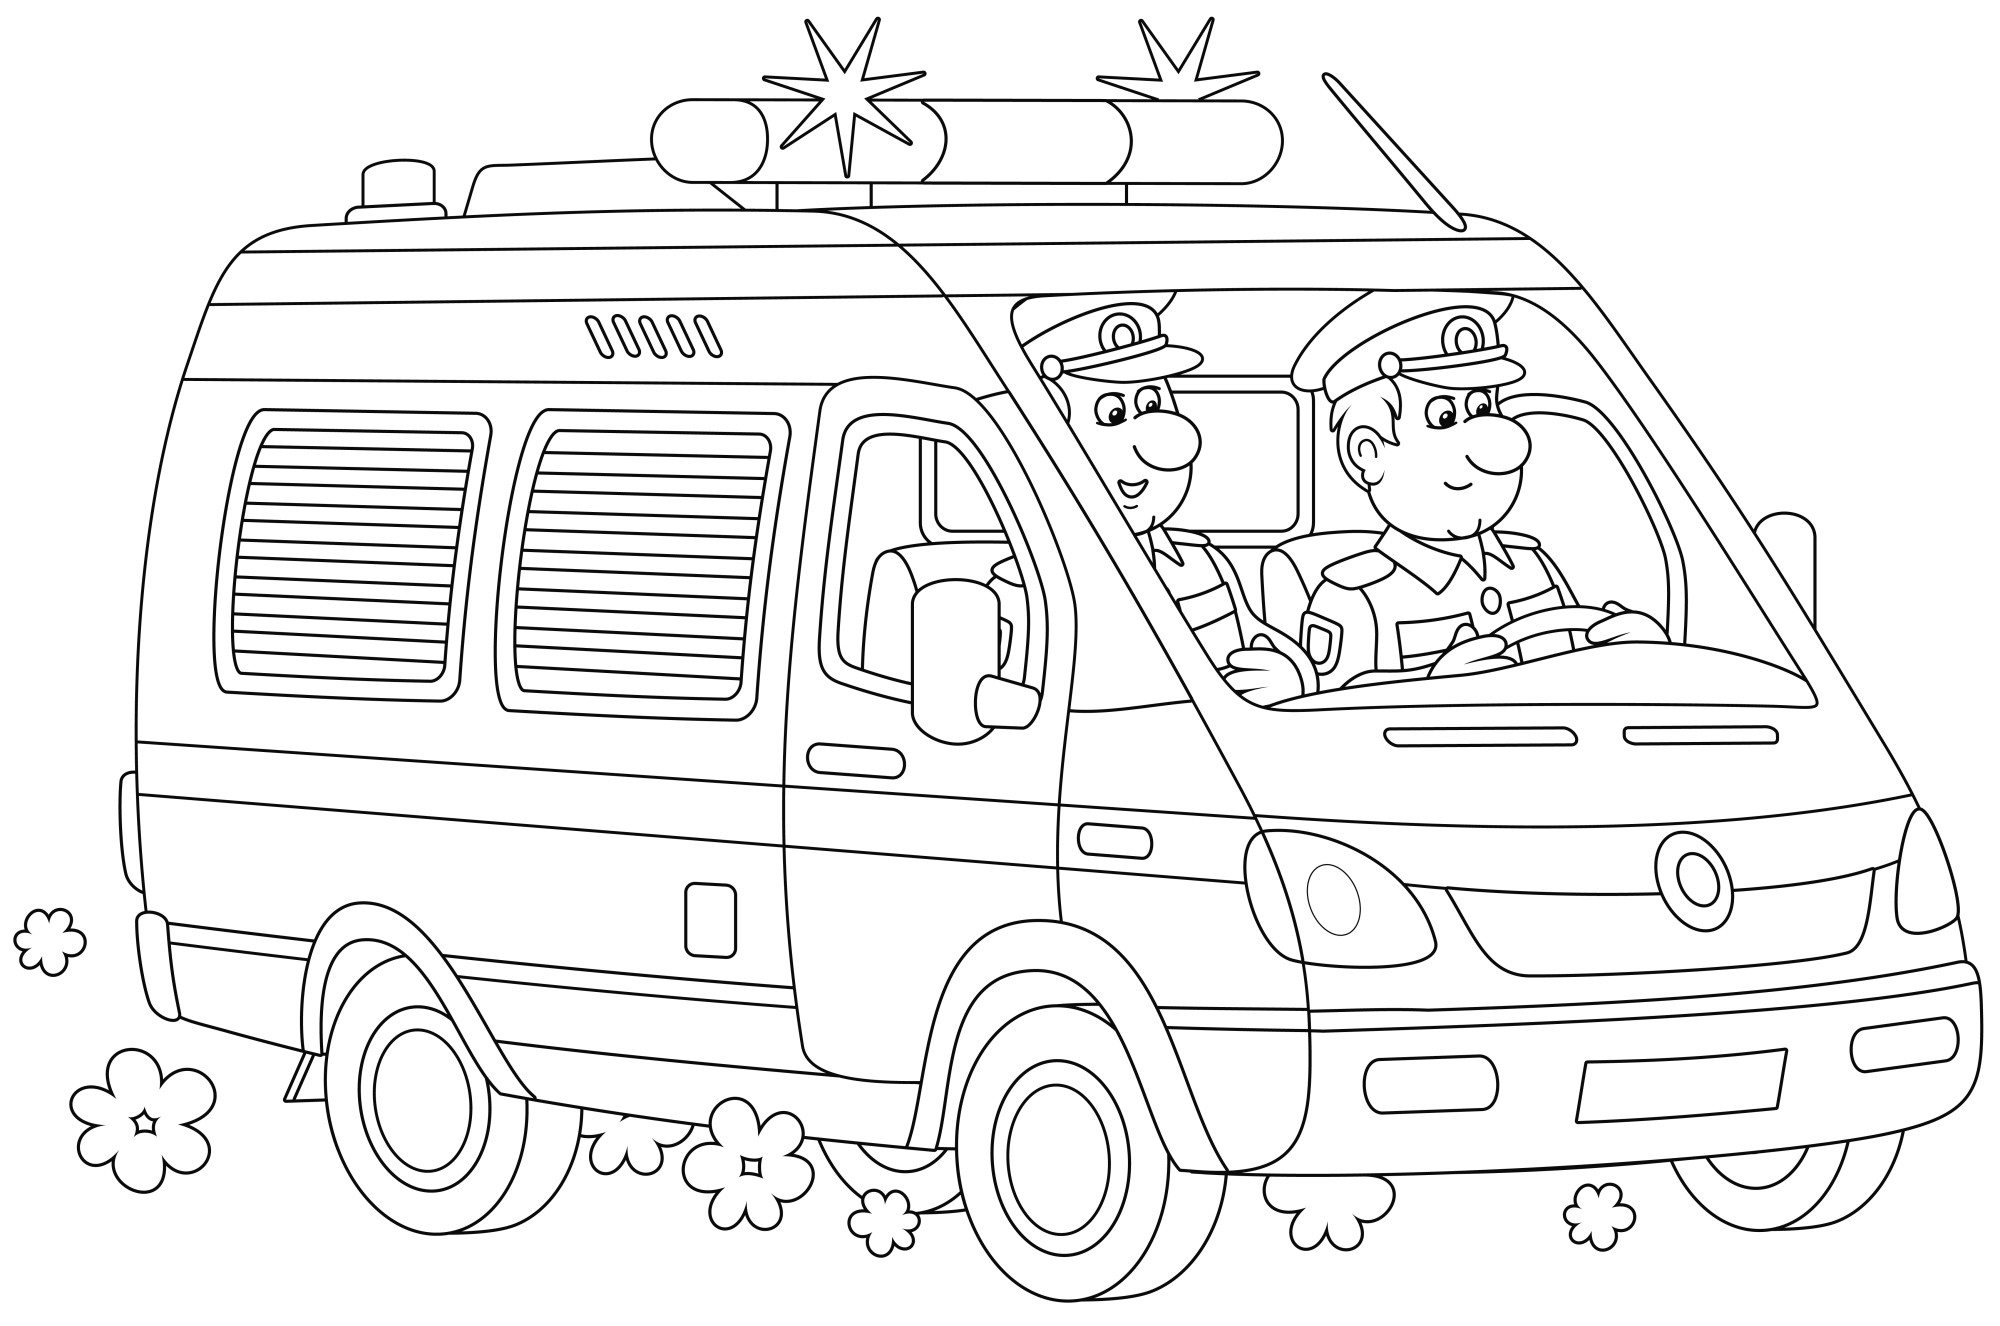 Раскраска для детей: полицейский фургон с мигалками